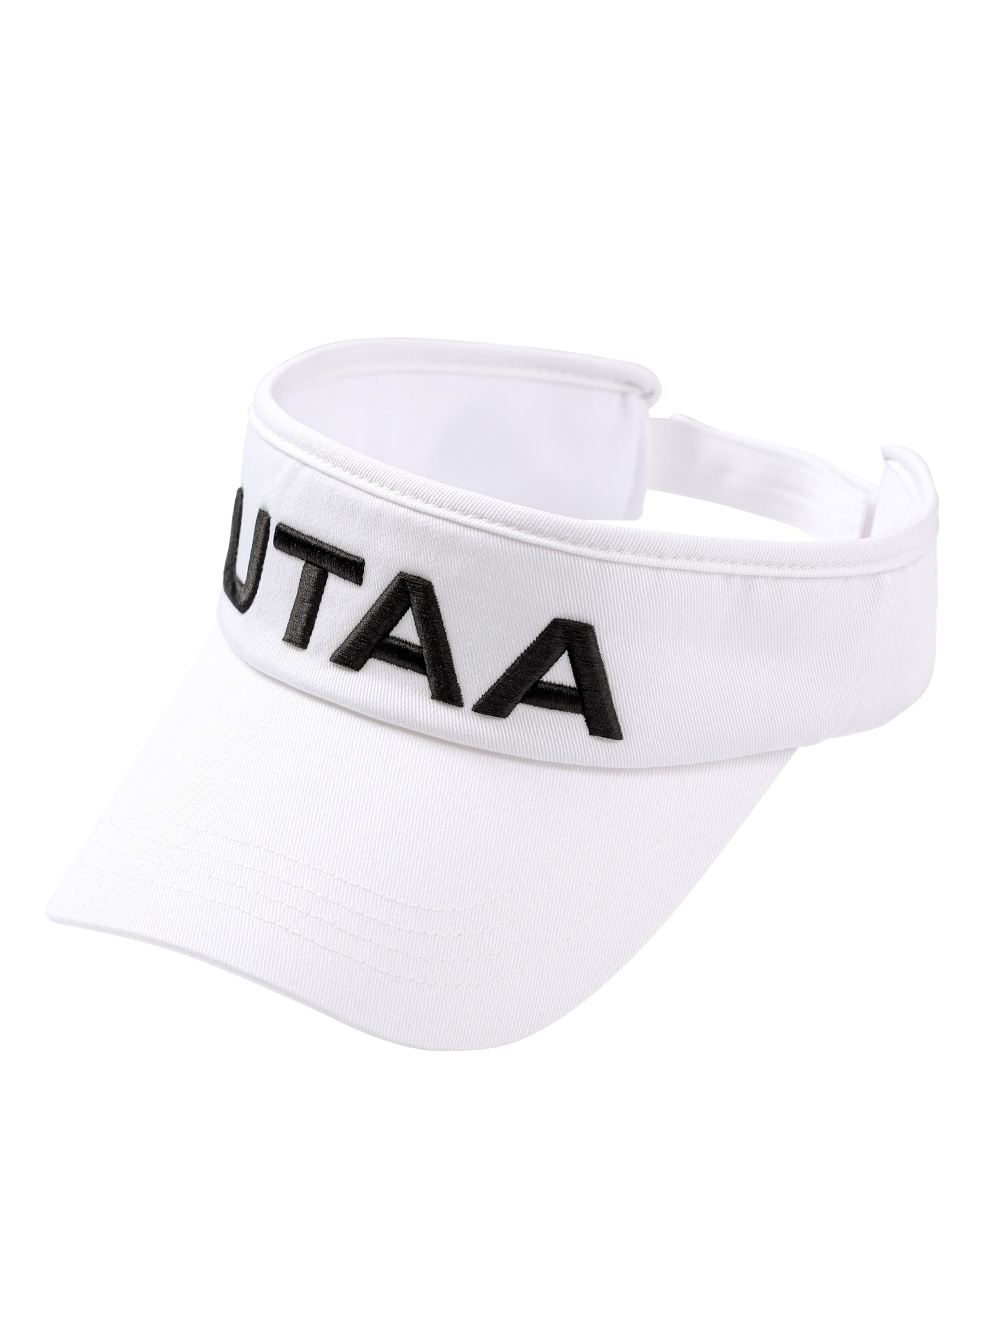 UTAA Basic Logo Visor : White (UA0GCM204WH)